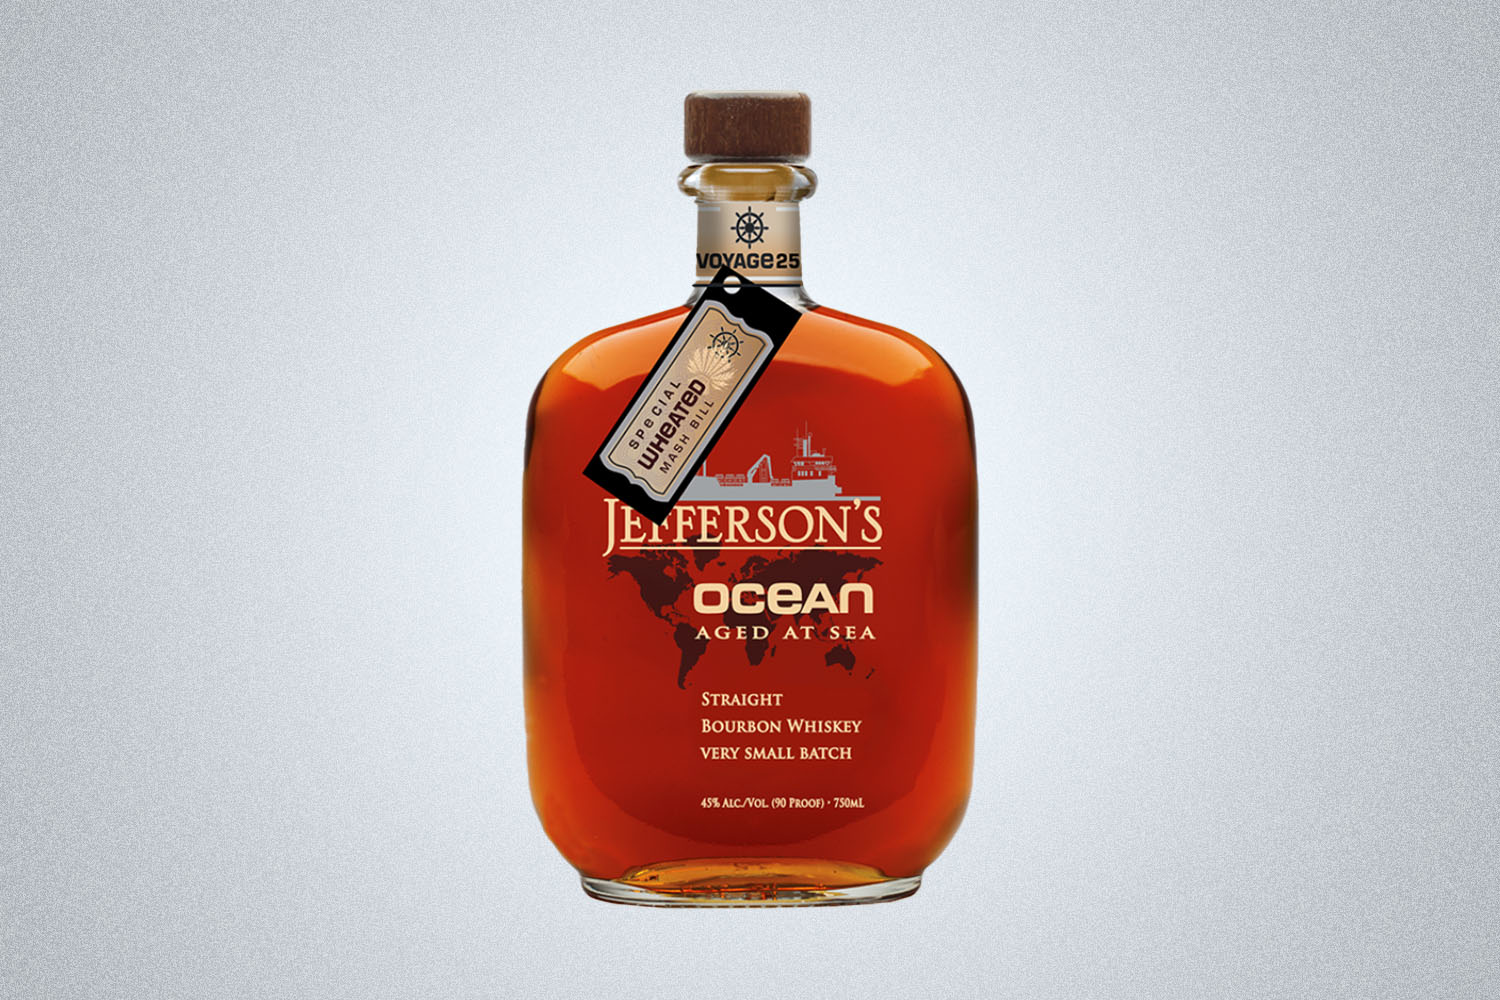 a bottle of Ocean aged Jefferson's Whiskey